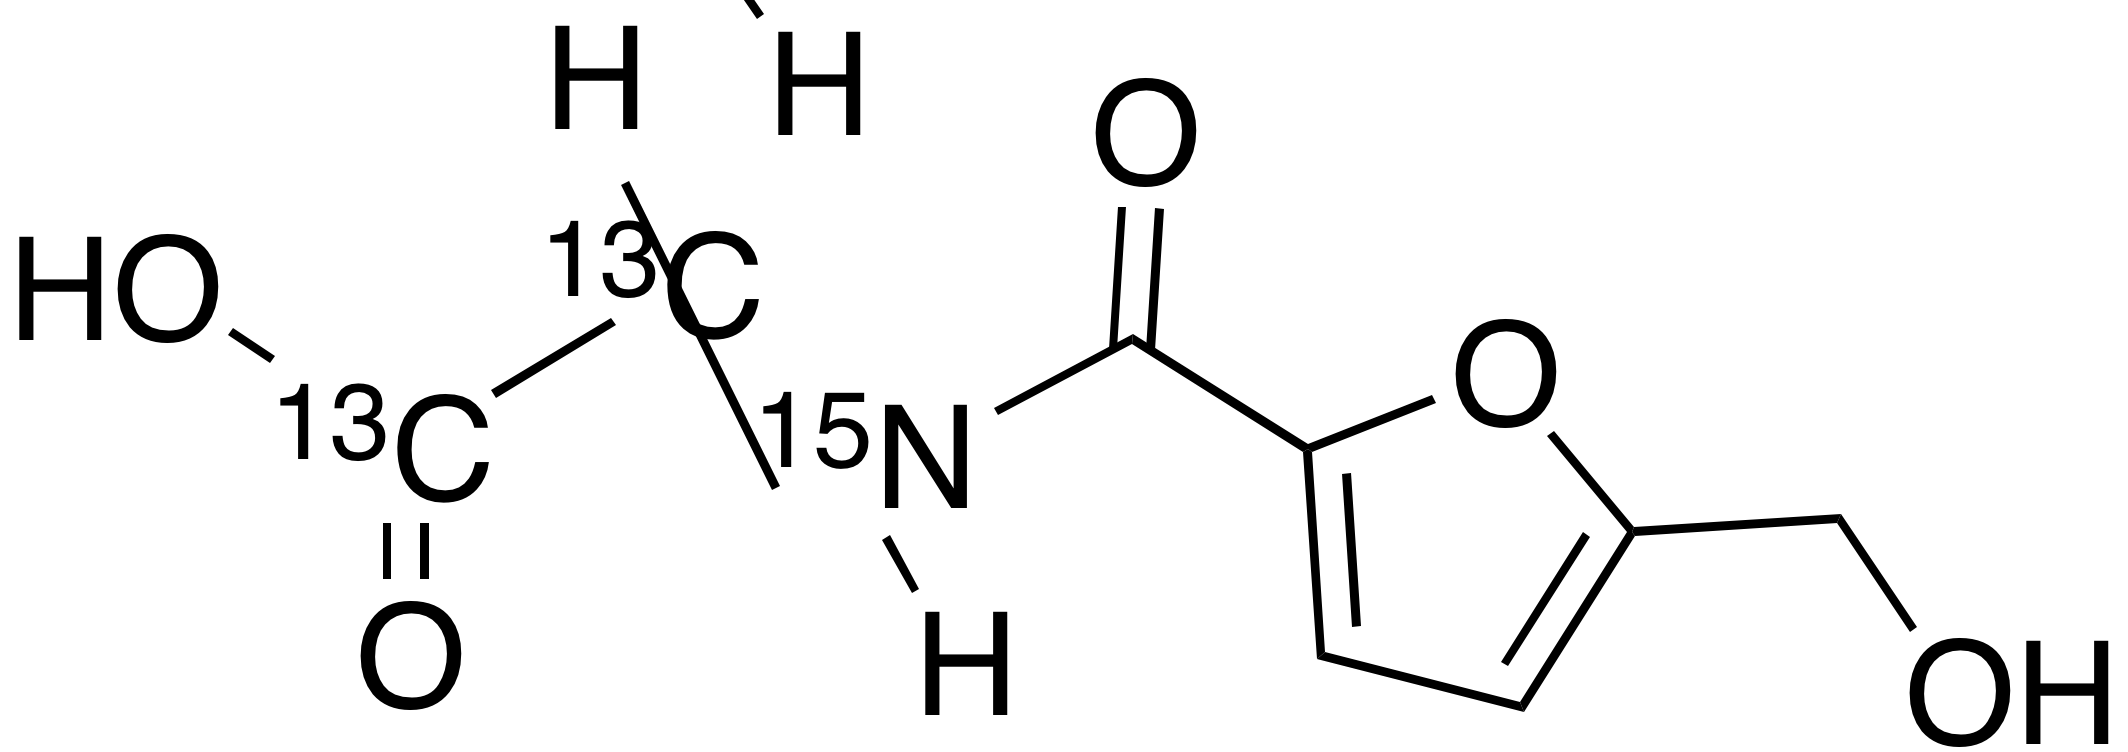 5-Hydroxymethyl-2-furoylglycine-13C2,15N